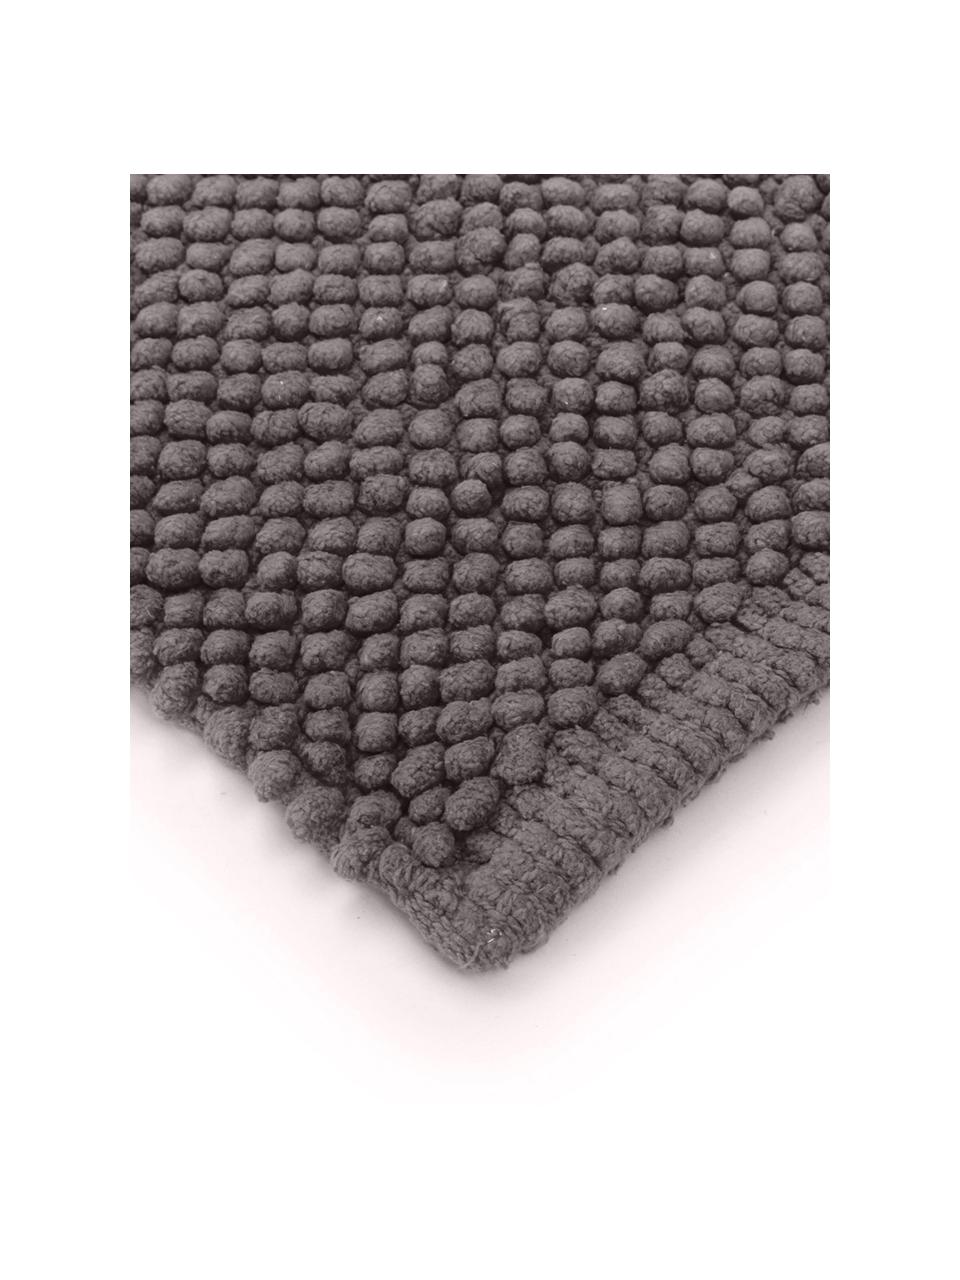 Tappeto bagno grigio scuro Anja, Cotone, Grigio scuro, Larg. 50 x Lung. 80 cm